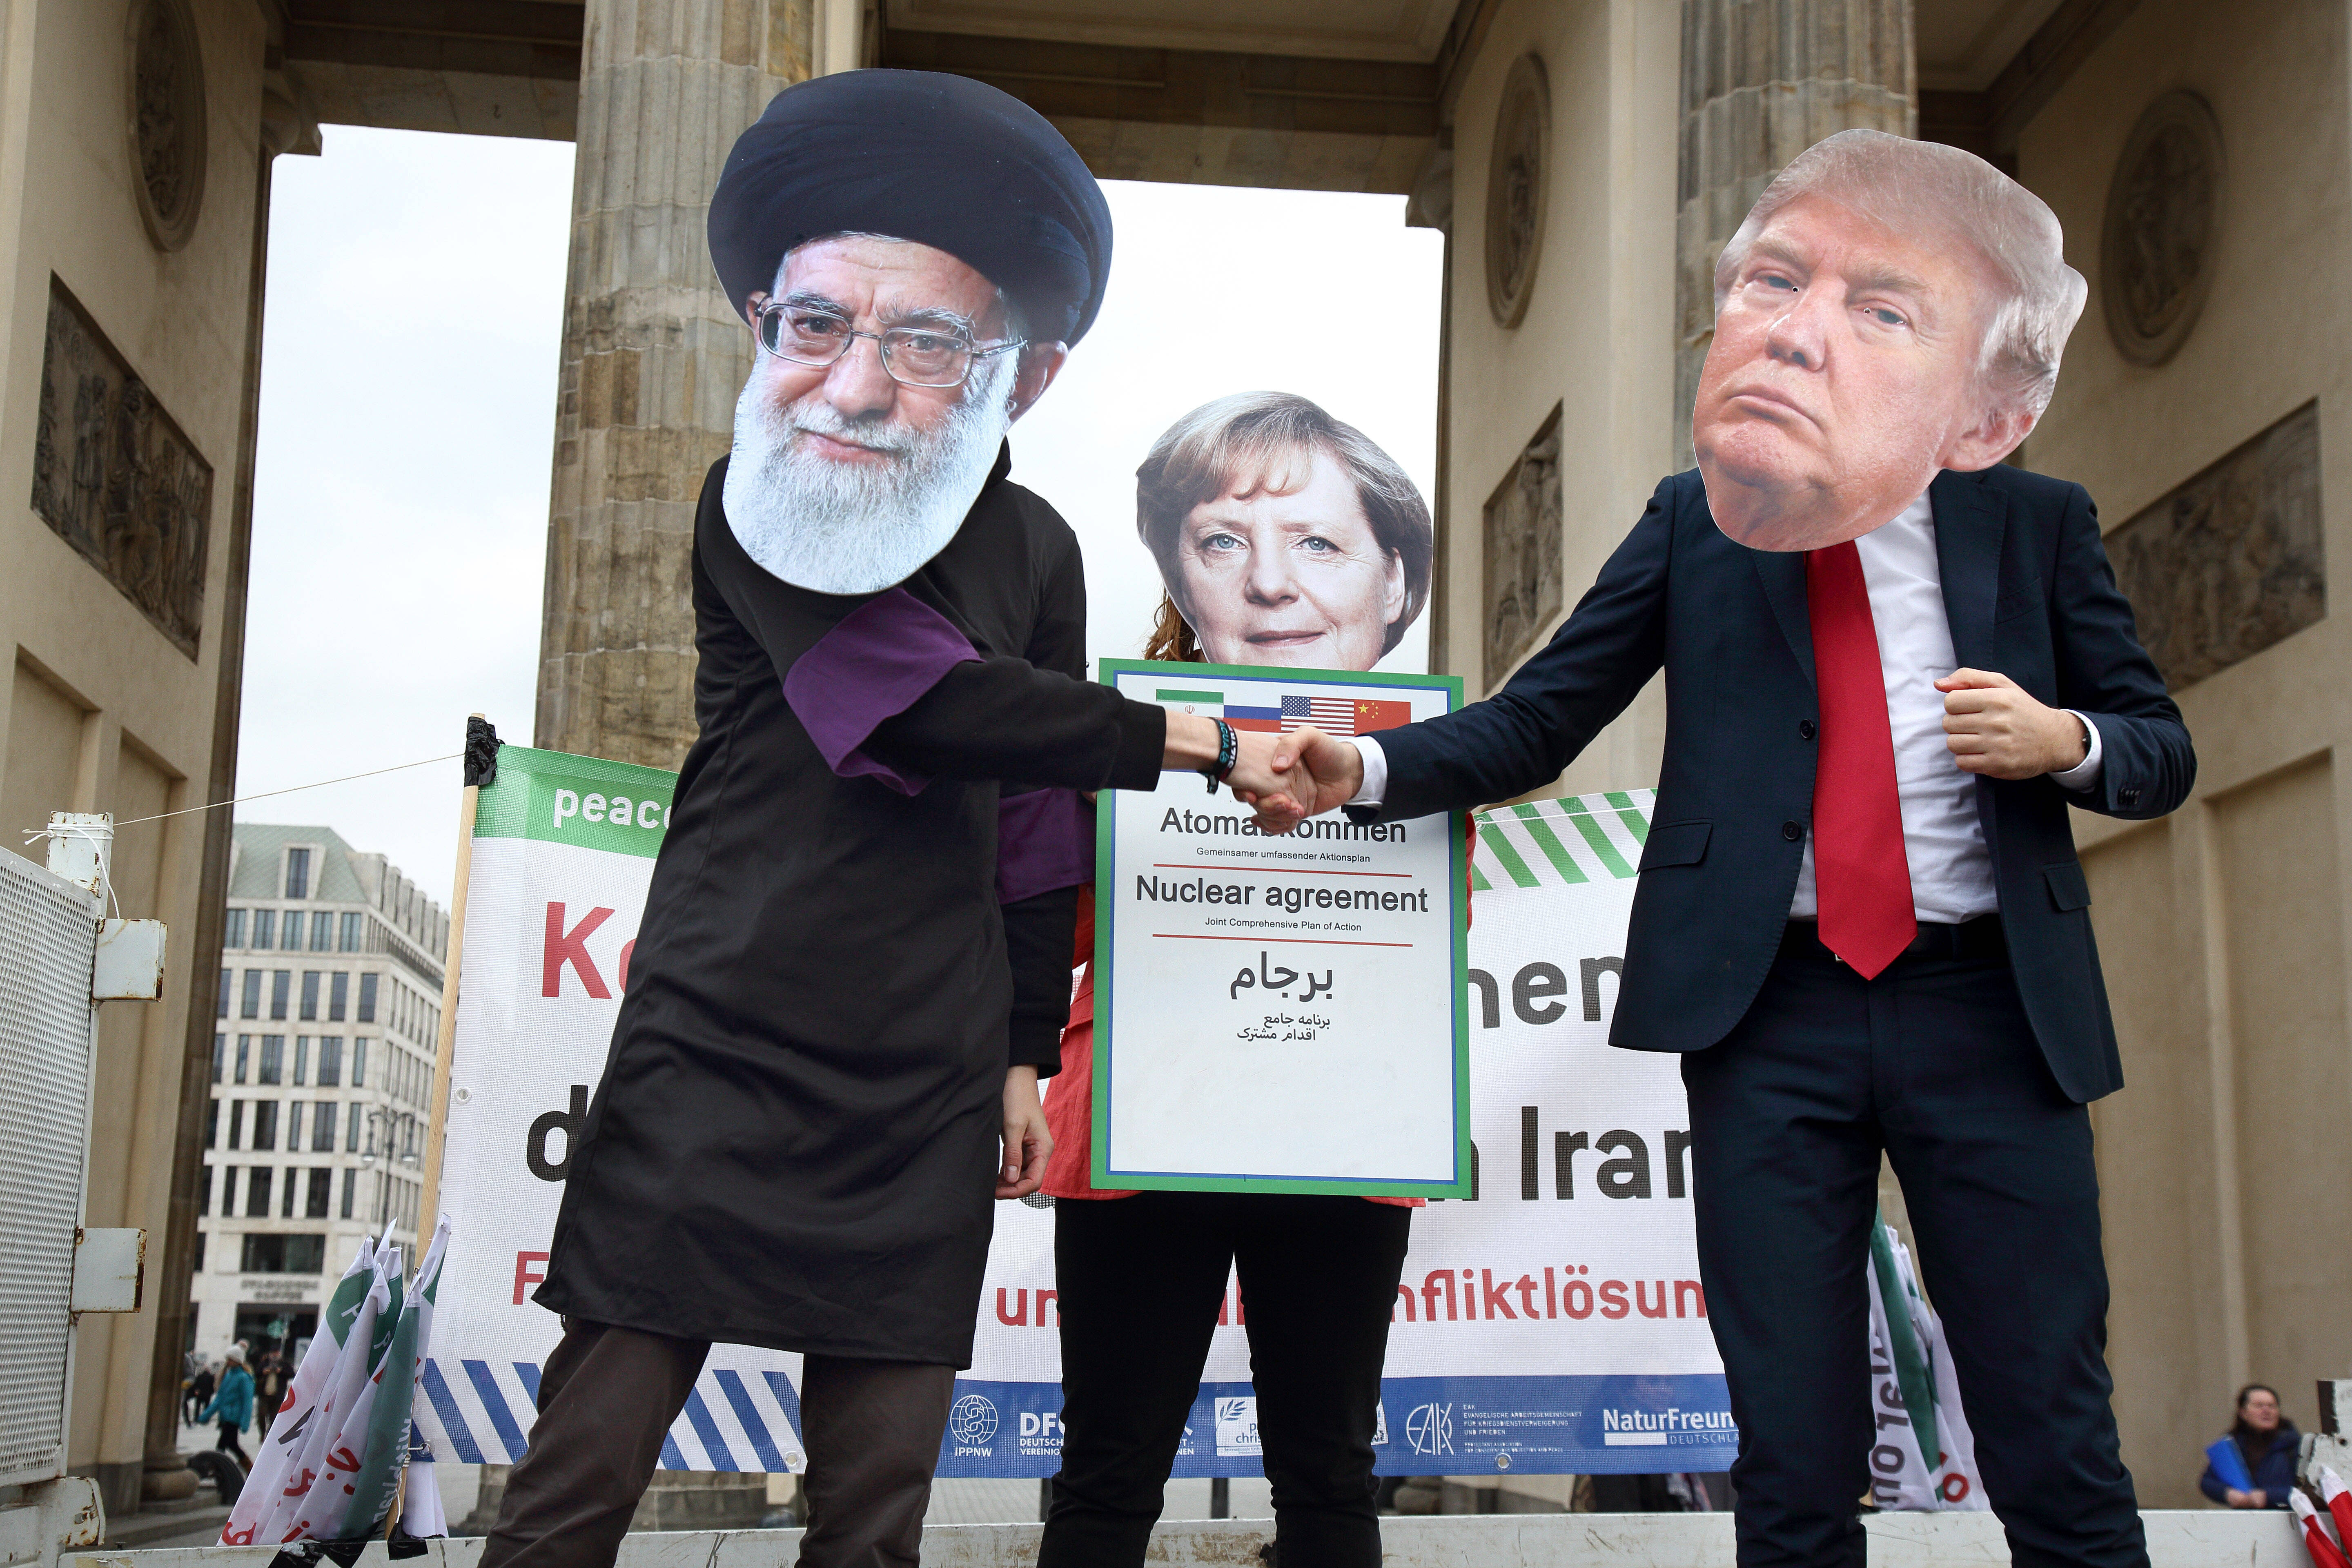 Американские власти хотят сделать так, чтобы Китай не покупал иранскую нефть, считают политологи Фото: © Global Look Press / Juergen Blume